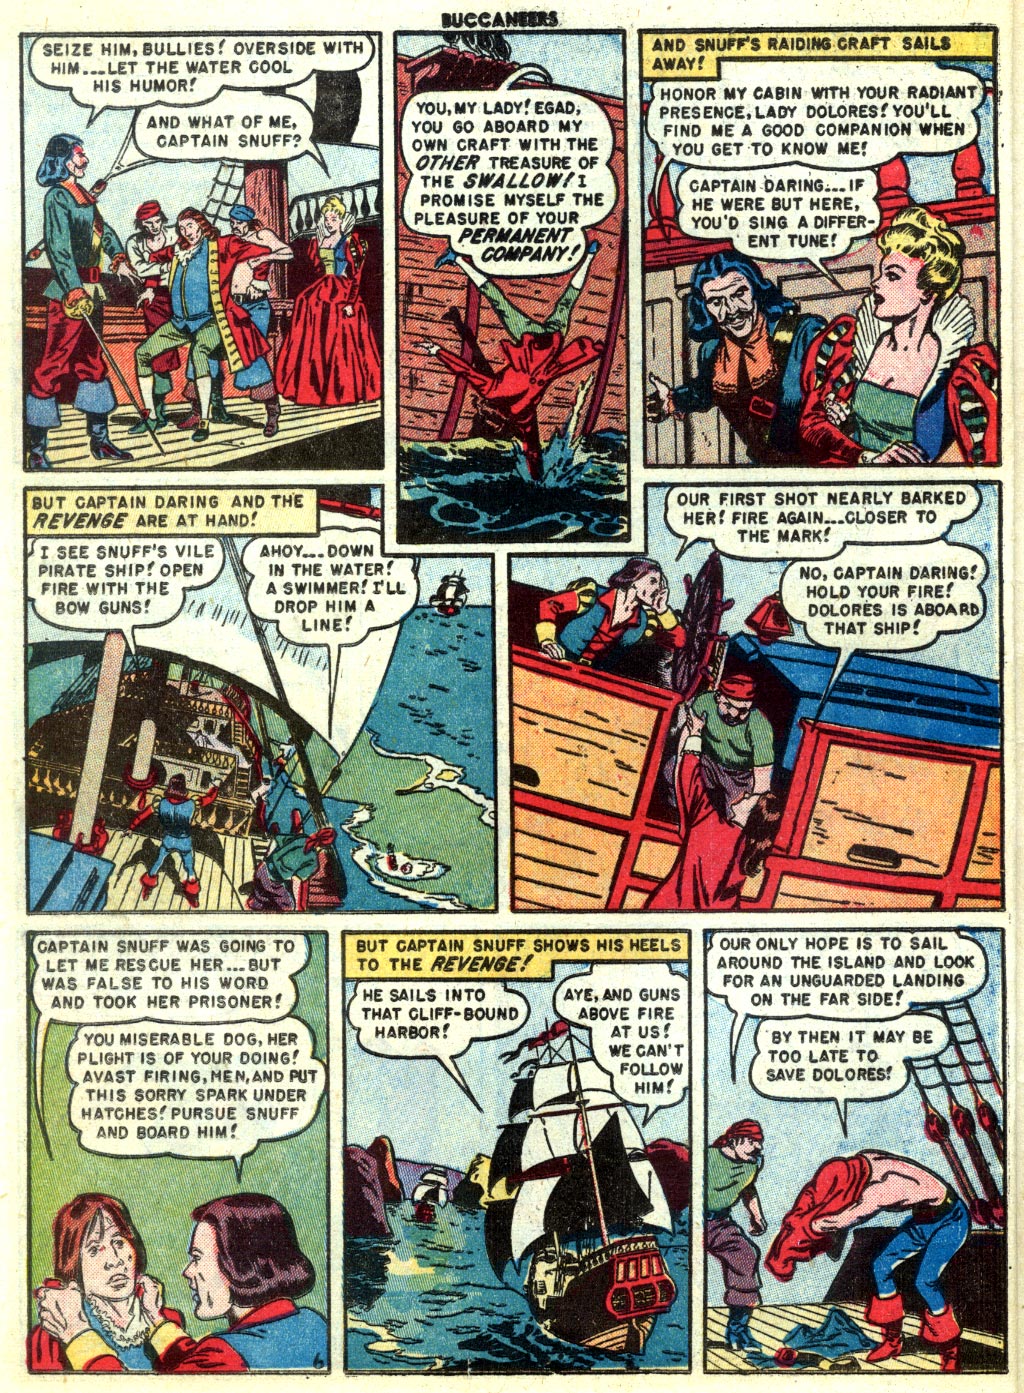 Read online Buccaneers comic -  Issue #22 - 8